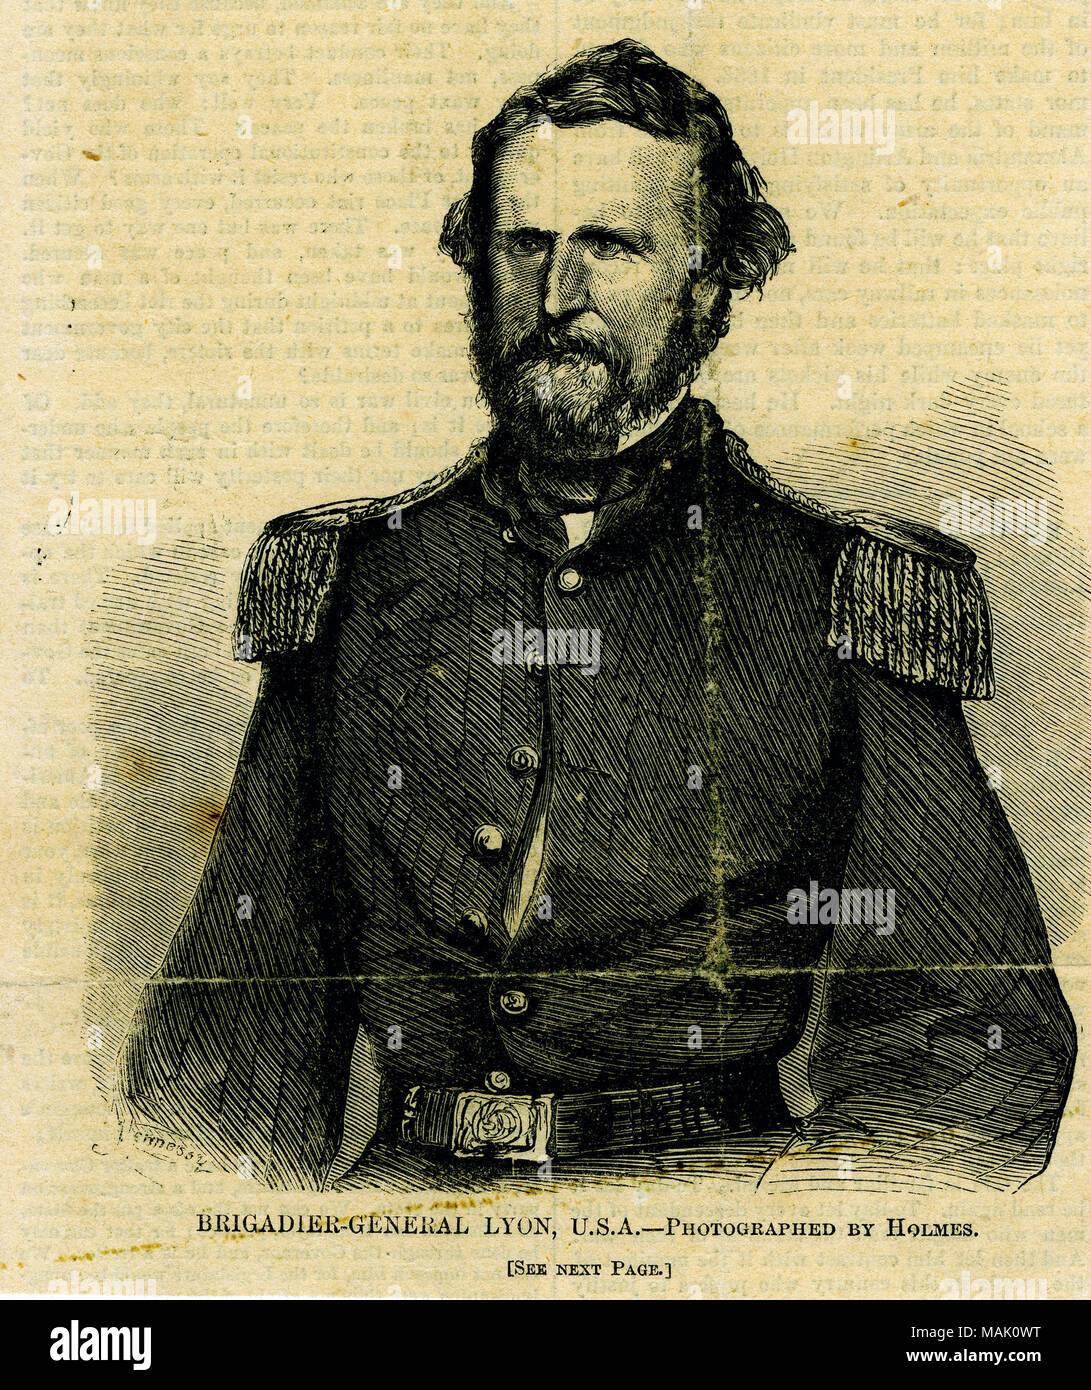 Busto ritratto di un uomo in uniforme. " Il Brigadiere Generale Lione, U. S. A. - fotografata da Holmes. [Vedere pagina successiva.]" (stampato immagine sotto). 'Taglia da 'Harpers Weekly' - Luglio 13, 1861." (scritta sul lato inverso). Vi è una copia della descrizione riportata nel giornale che è sul lato inverso del cartone. Ritaglio di giornale da Harper's settimanale, luglio 13, 1861. Titolo: 'Brigadier-General Lyon, U.S.A.' (Nathaniel Lyon, Unione). . Il 13 luglio 1861. Holmes Foto Stock